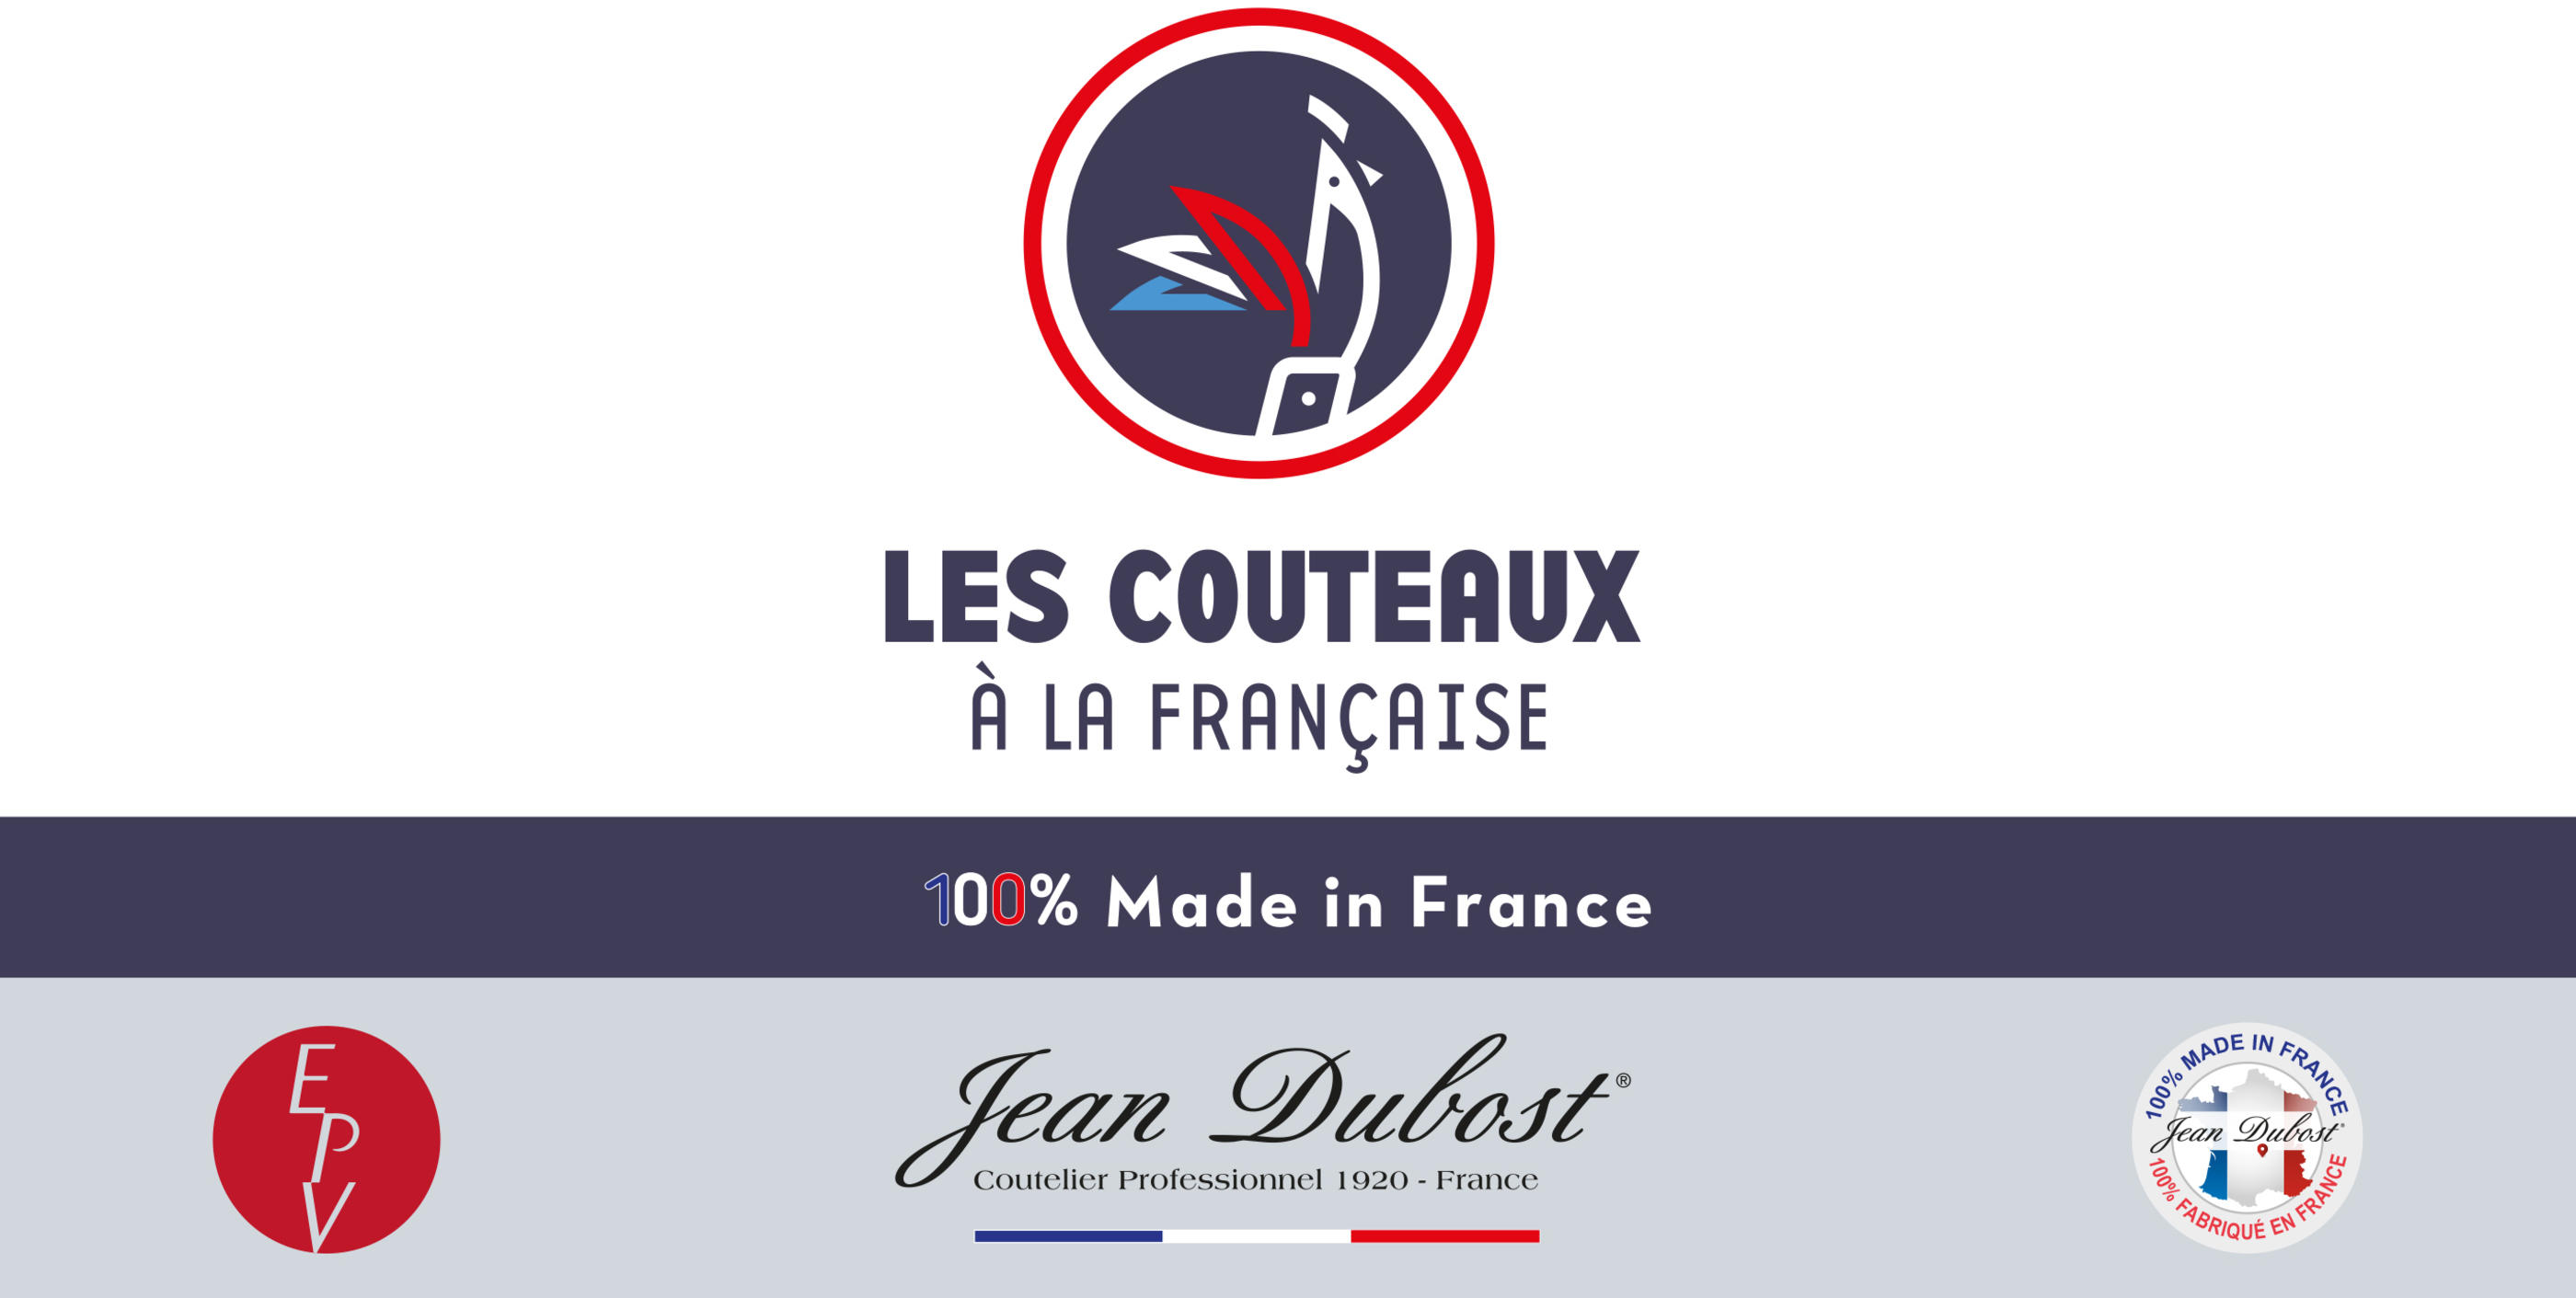 Les_couteaux_a_la_francaise_Jean_Dubost